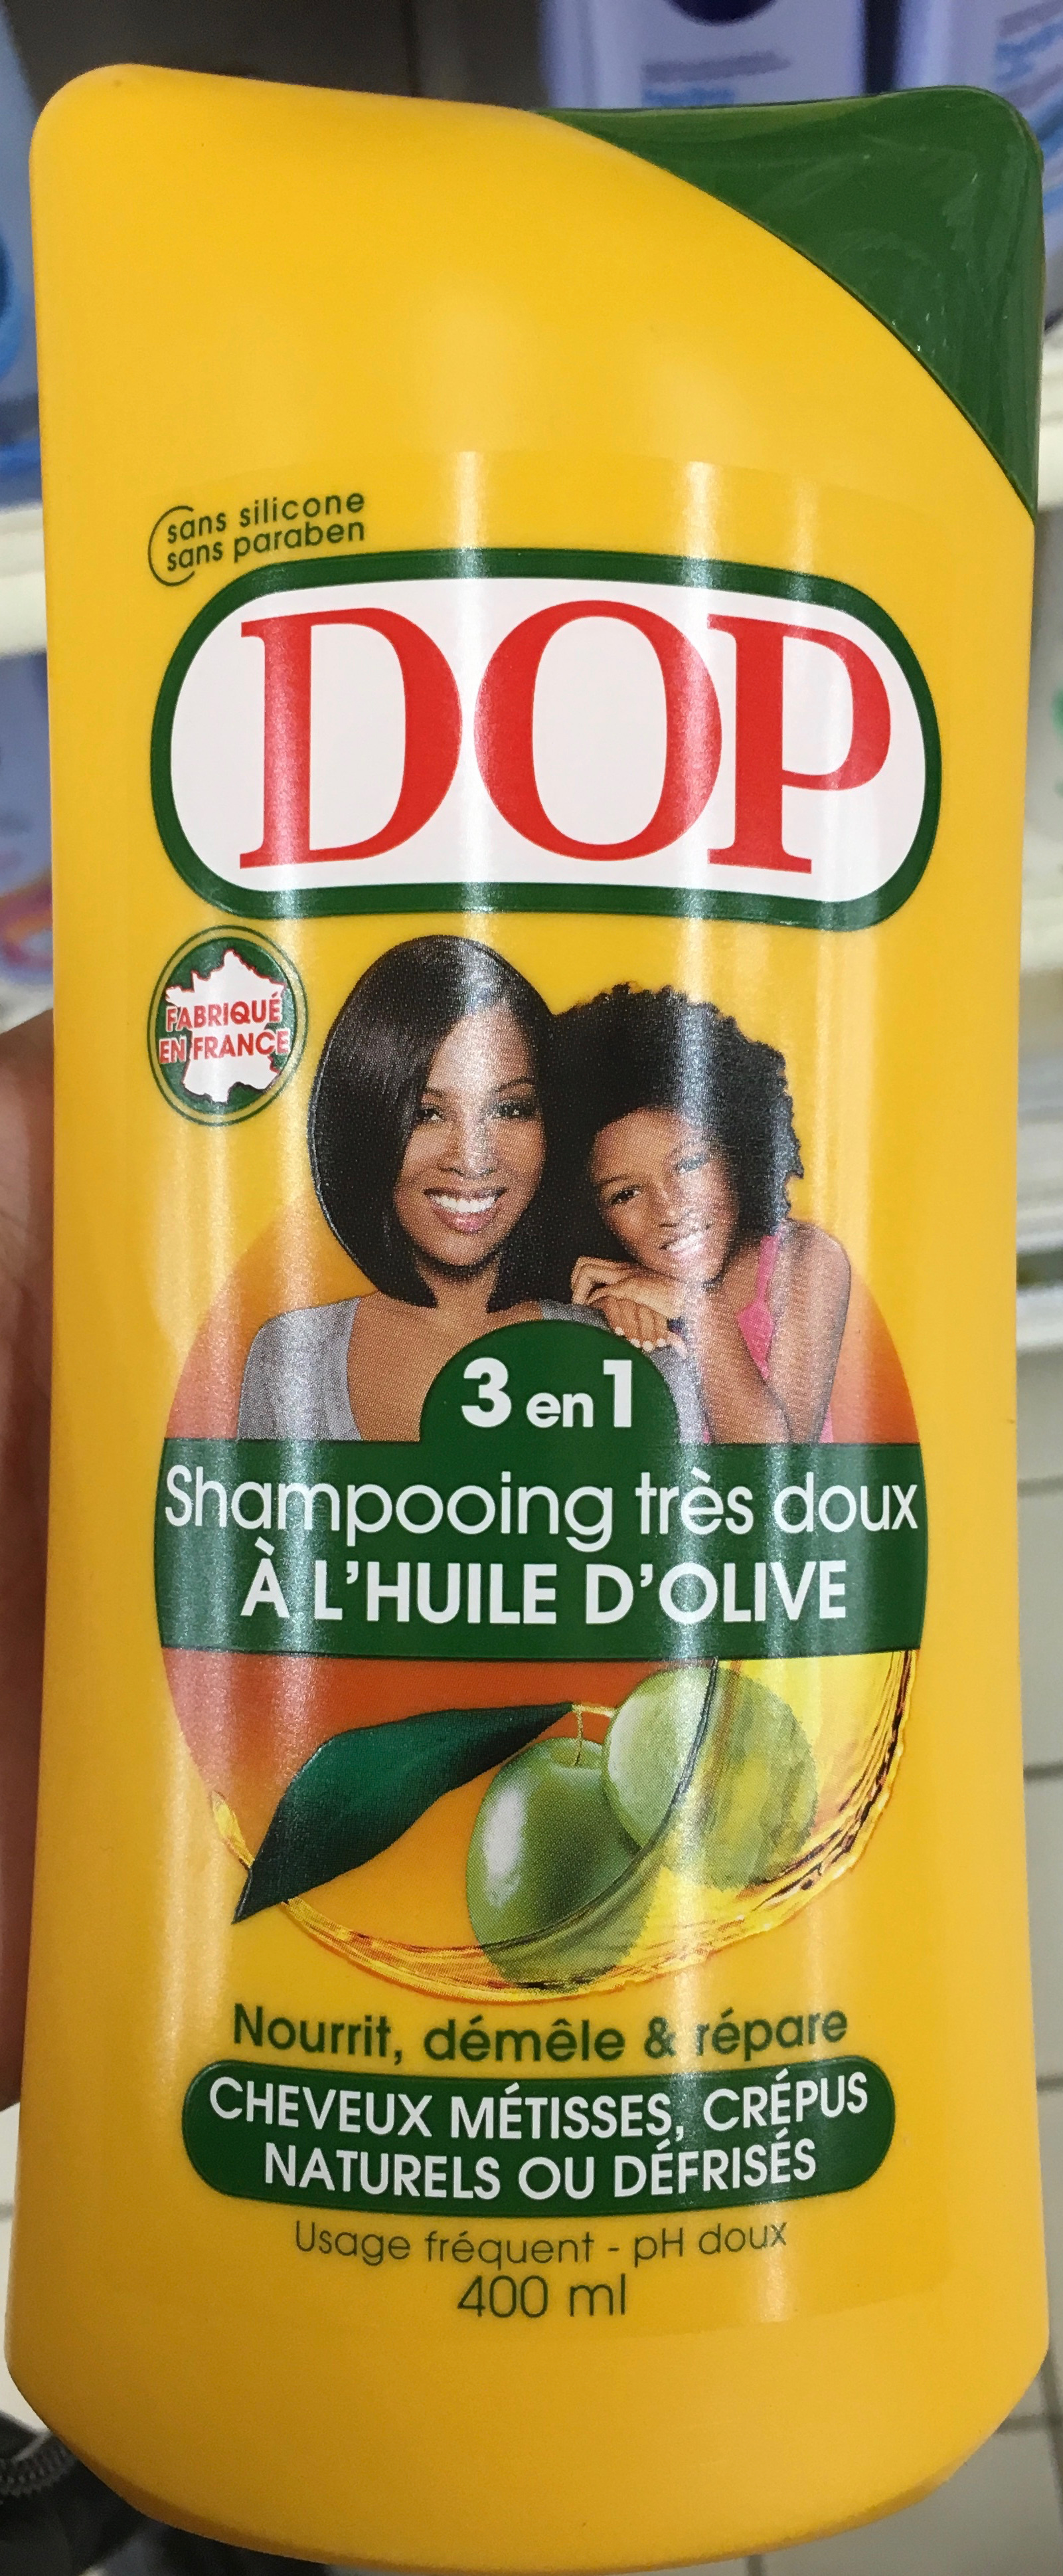 Shampooing très doux à l'huile d'olive 3 en 1 - Produit - fr